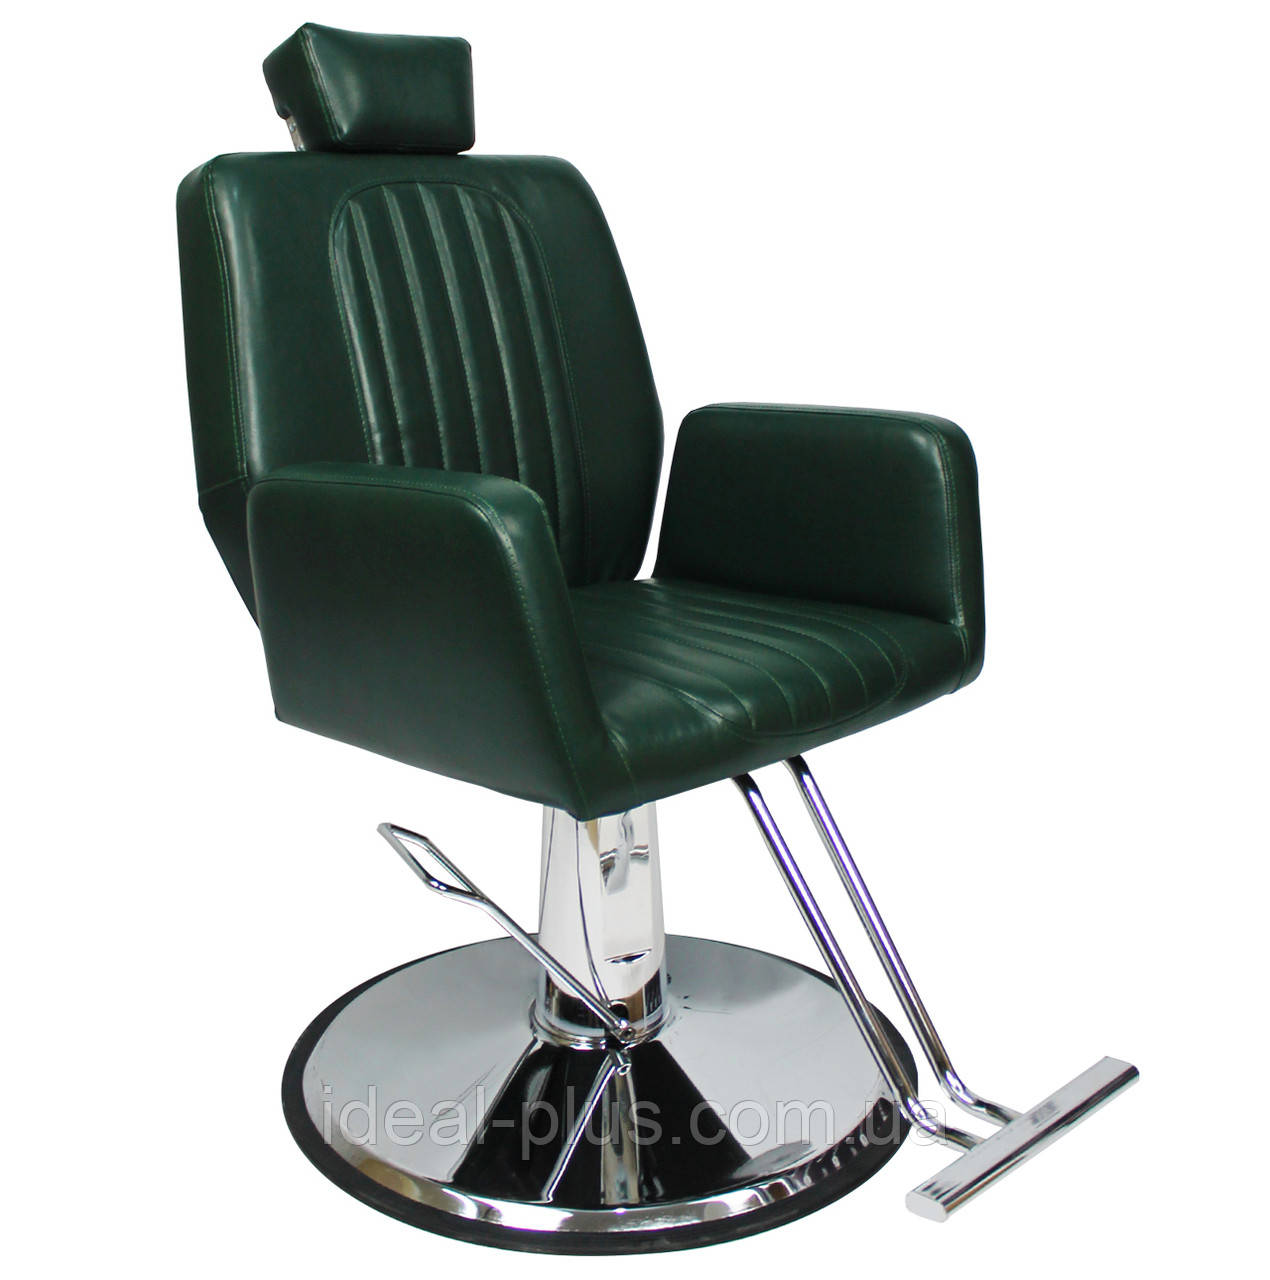 Крісло барбера Infinity перукарське чоловіче крісло з підголовником для Barber Shop крісла для барбершопа